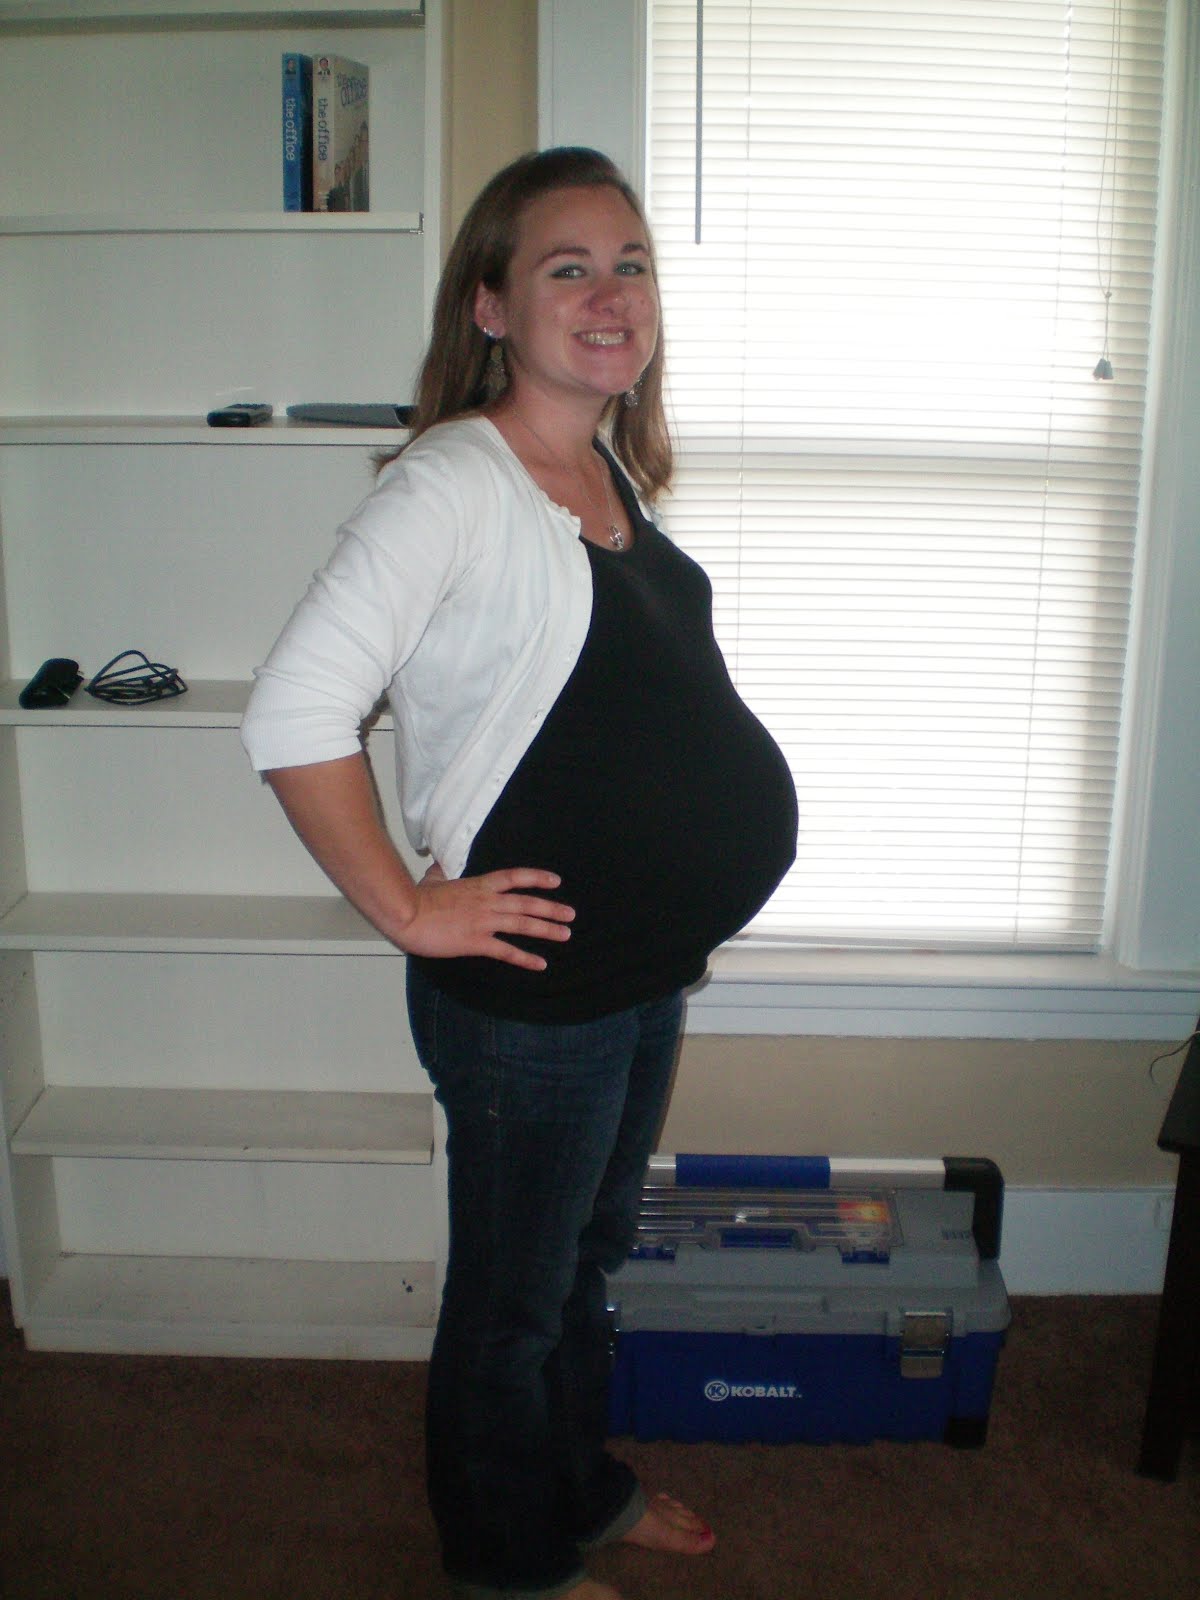 Девочки 37 недель. Живот на 37 неделе. Ребёнок на 37 неделе беременности.